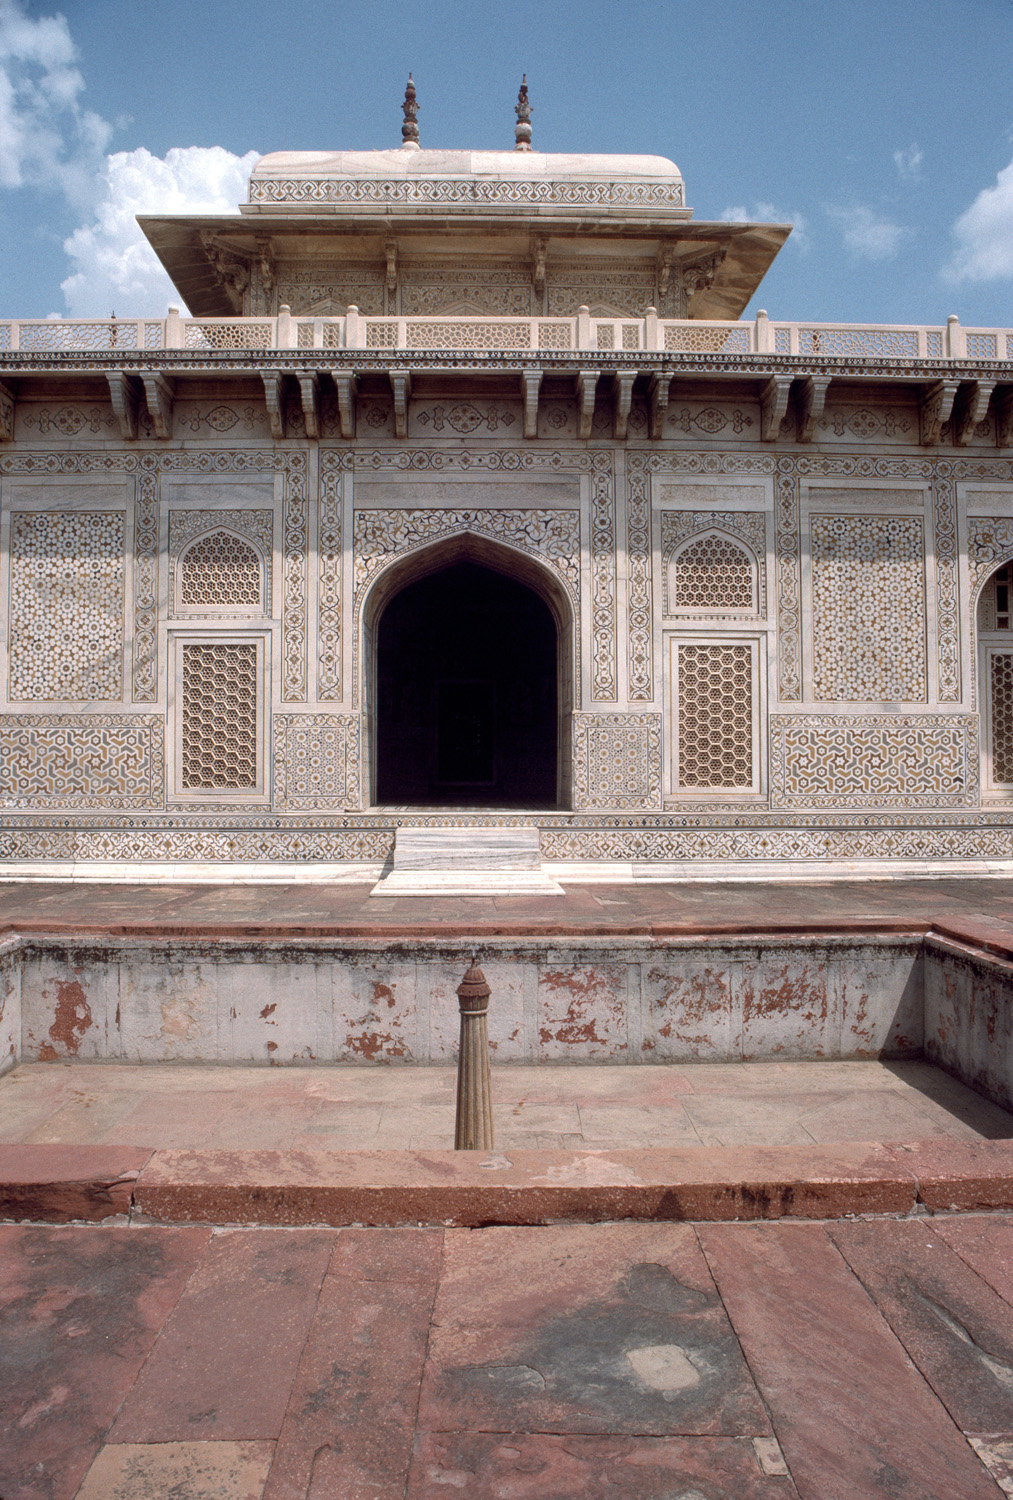 Mausoleum of I'timad al-Daula - Exterior, detail of central bay